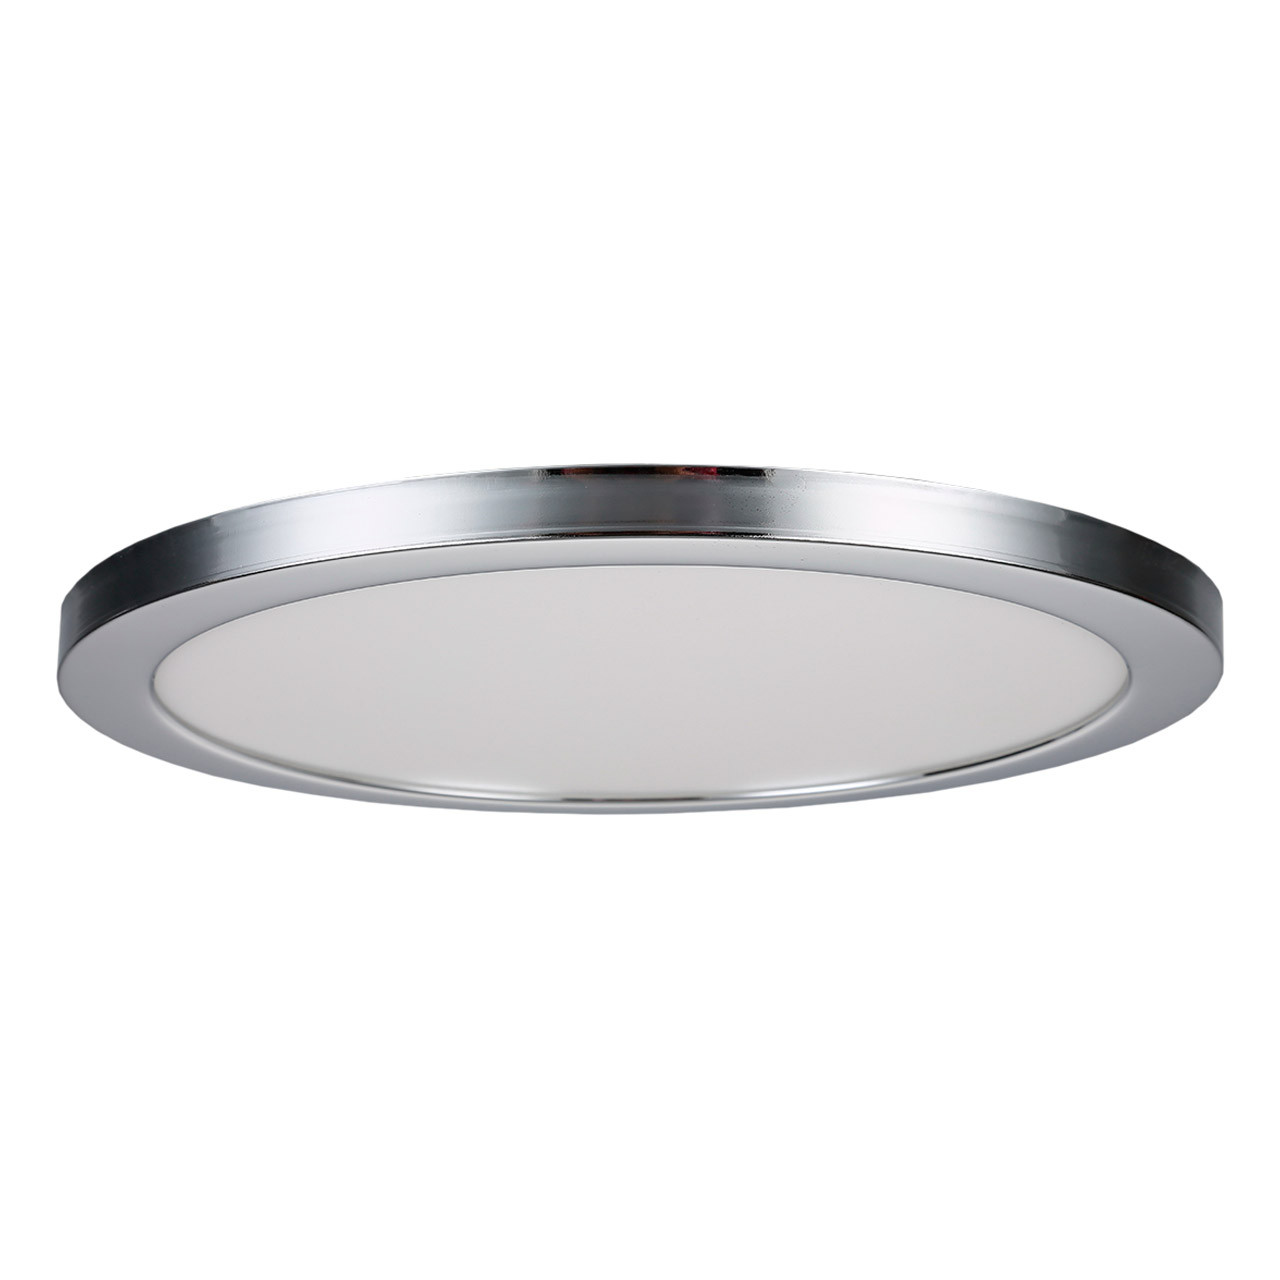 Photos - Chandelier / Lamp SPA 290mm Tauri LED Flush Ceiling Light Ring Chrome -35722 